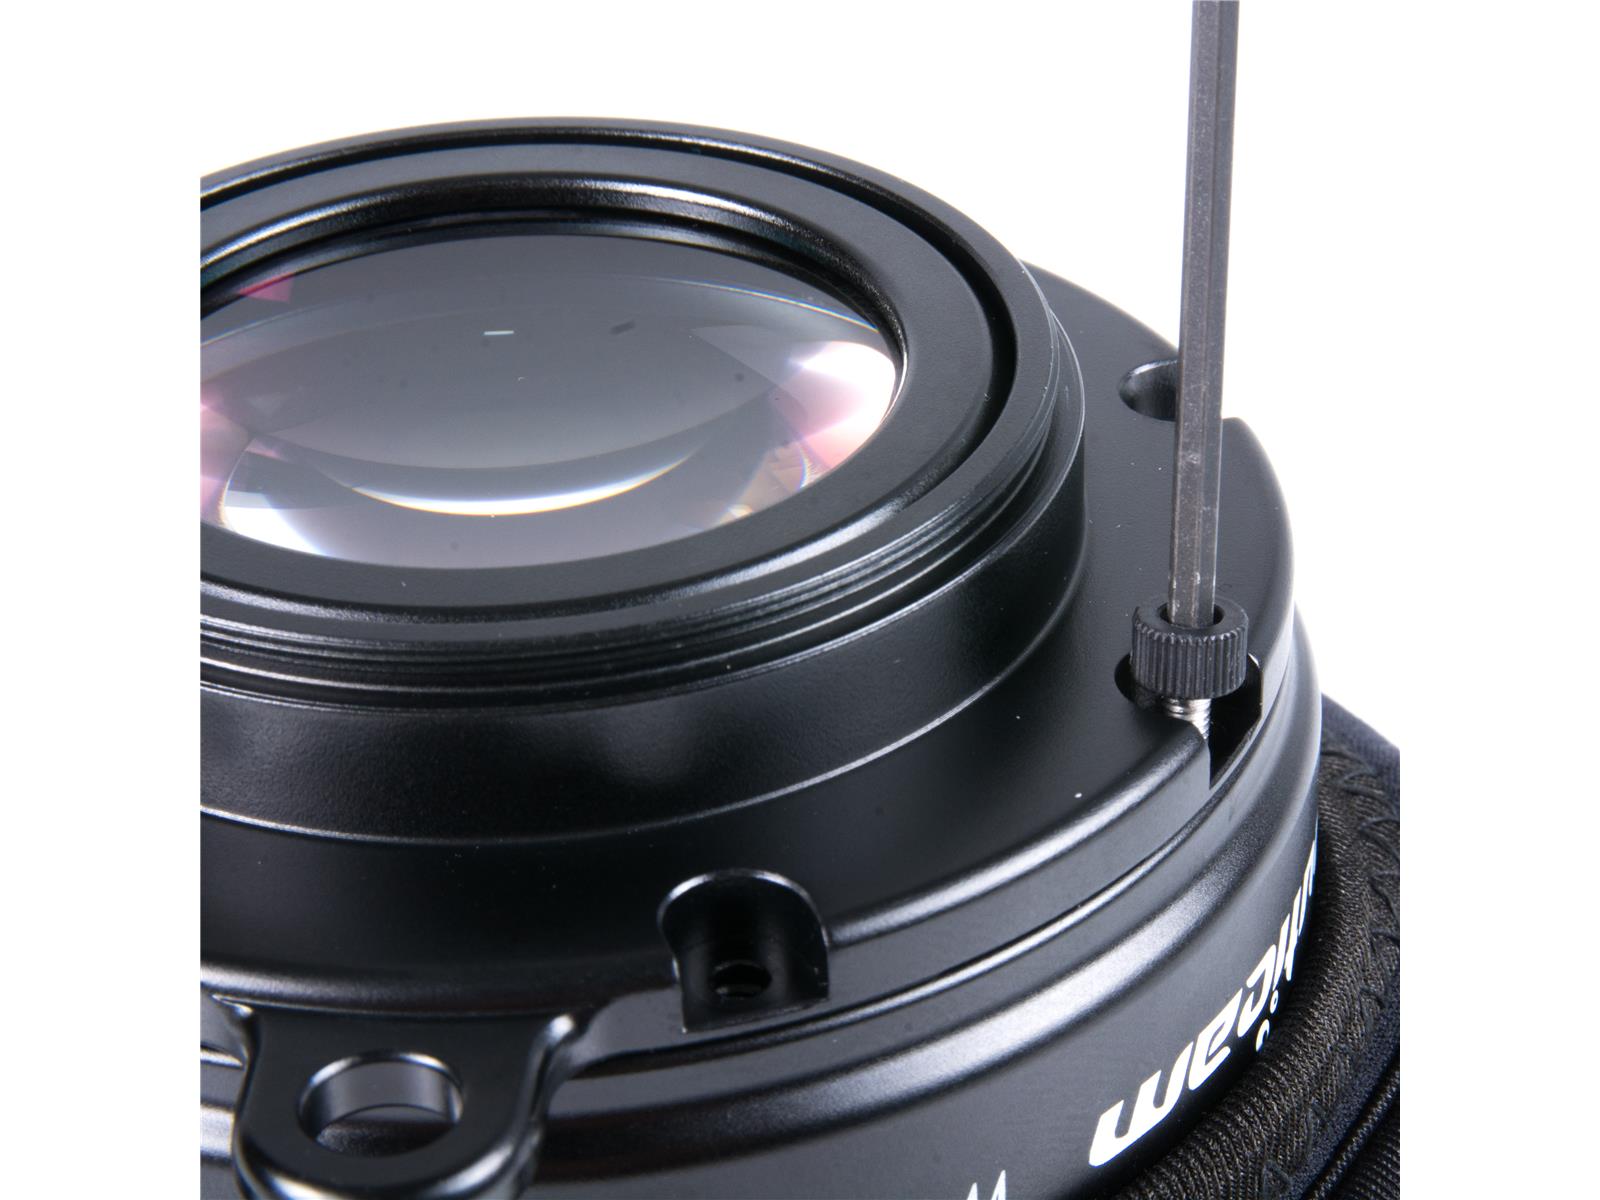 Wet Wide Lens 1 (WWL-1) von Nauticam